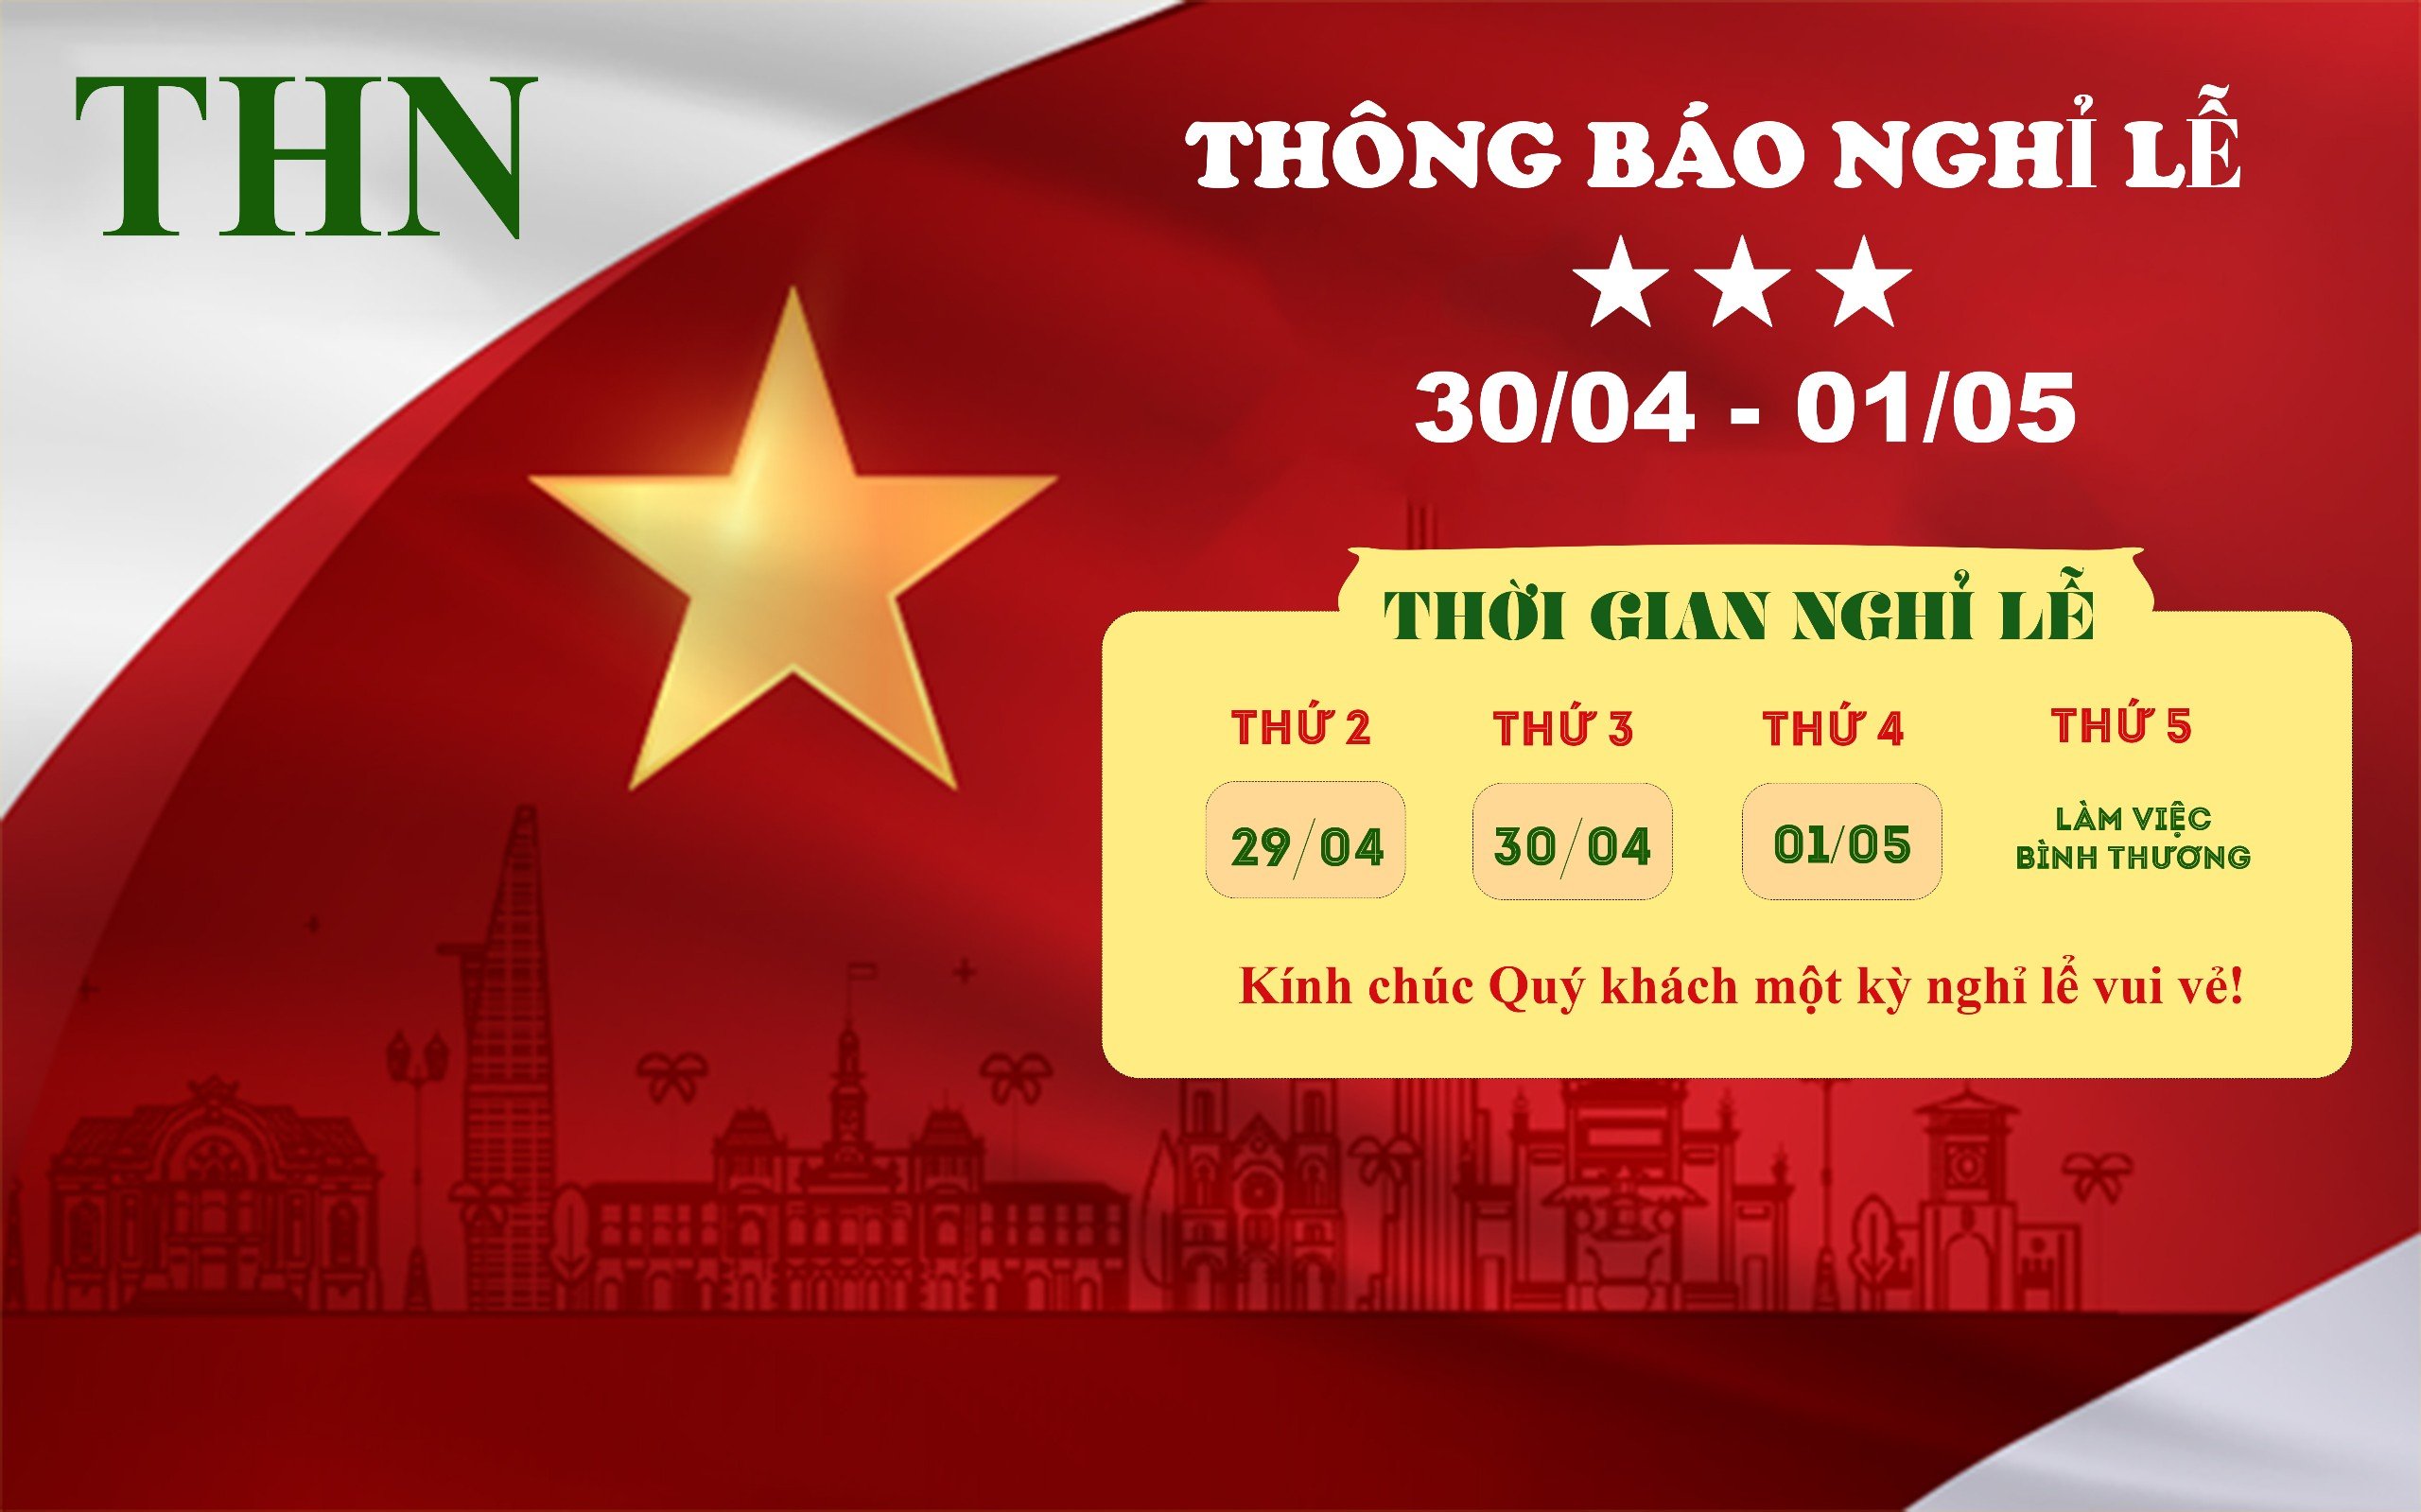 THN Việt Nam Thông Báo Lịch Nghỉ Lễ 30/04 – 01/05